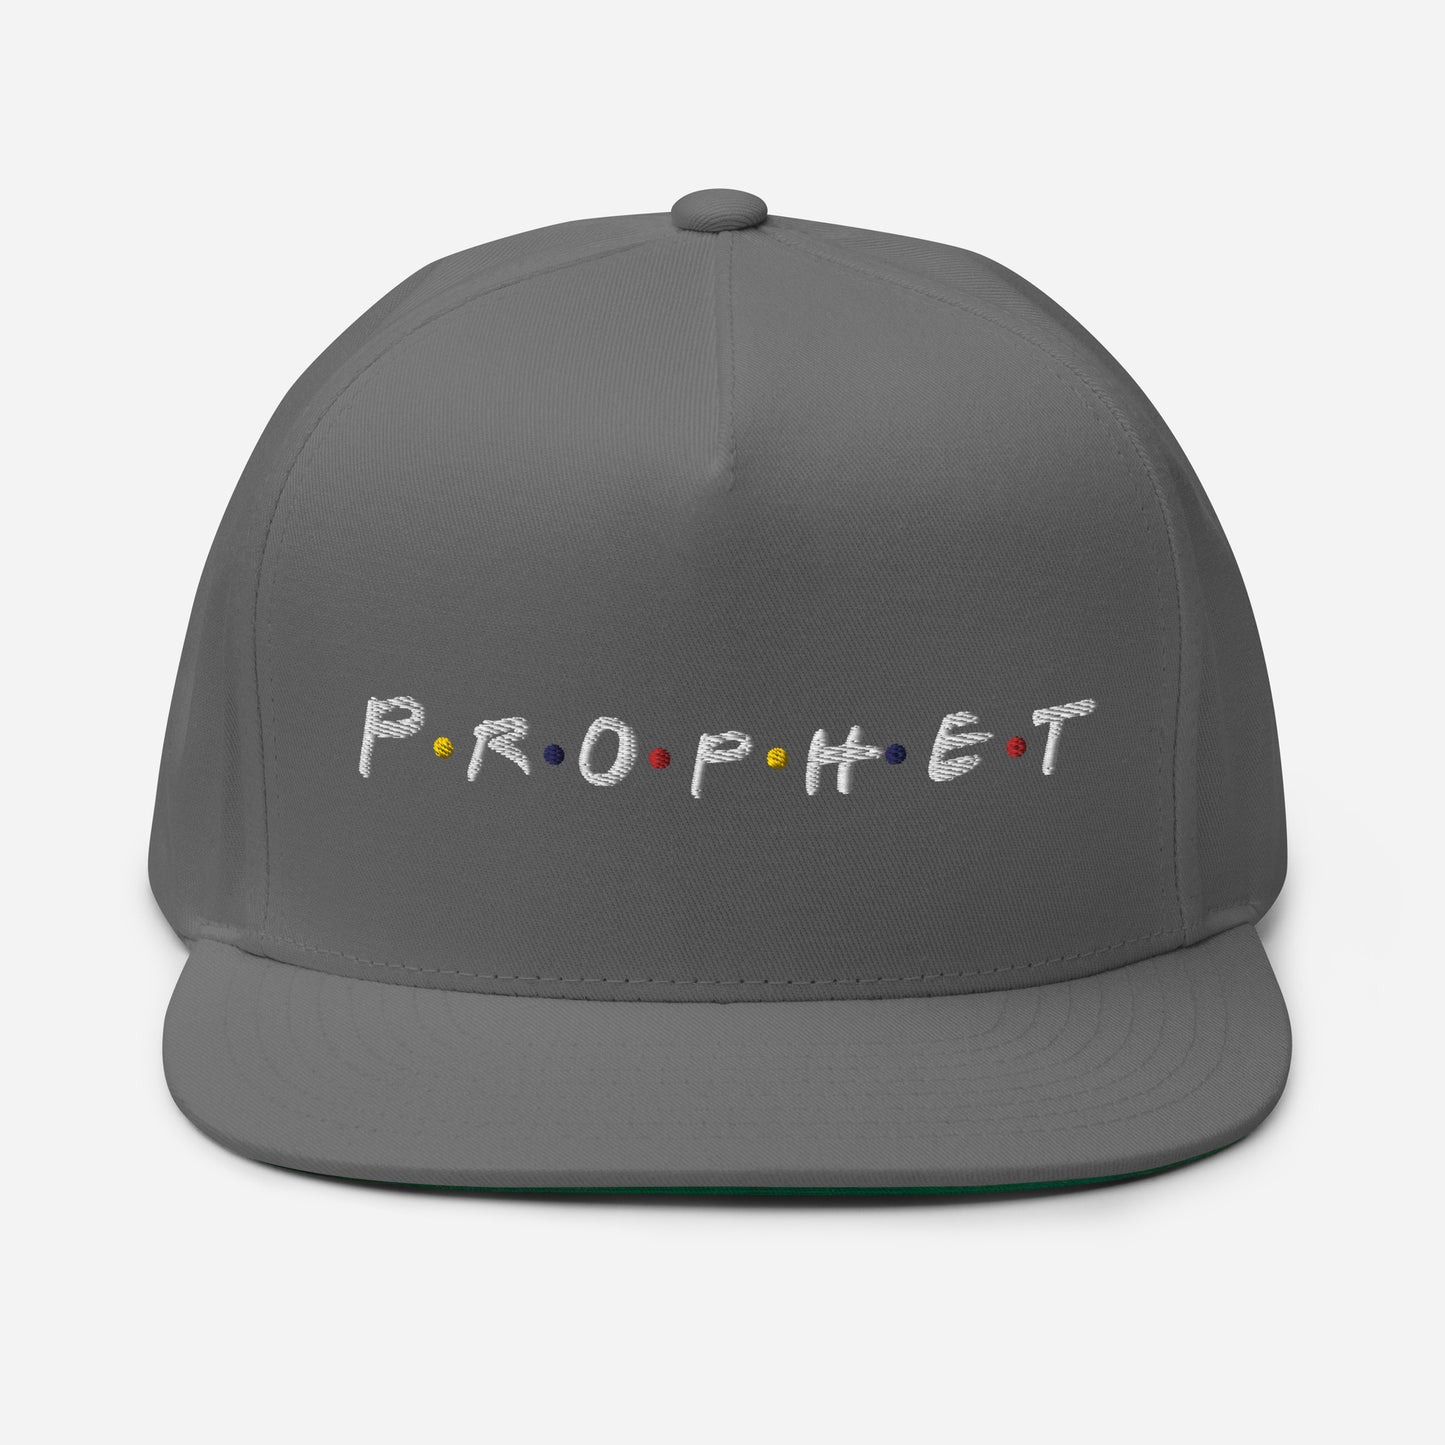 Prophet Flat Bill Cap